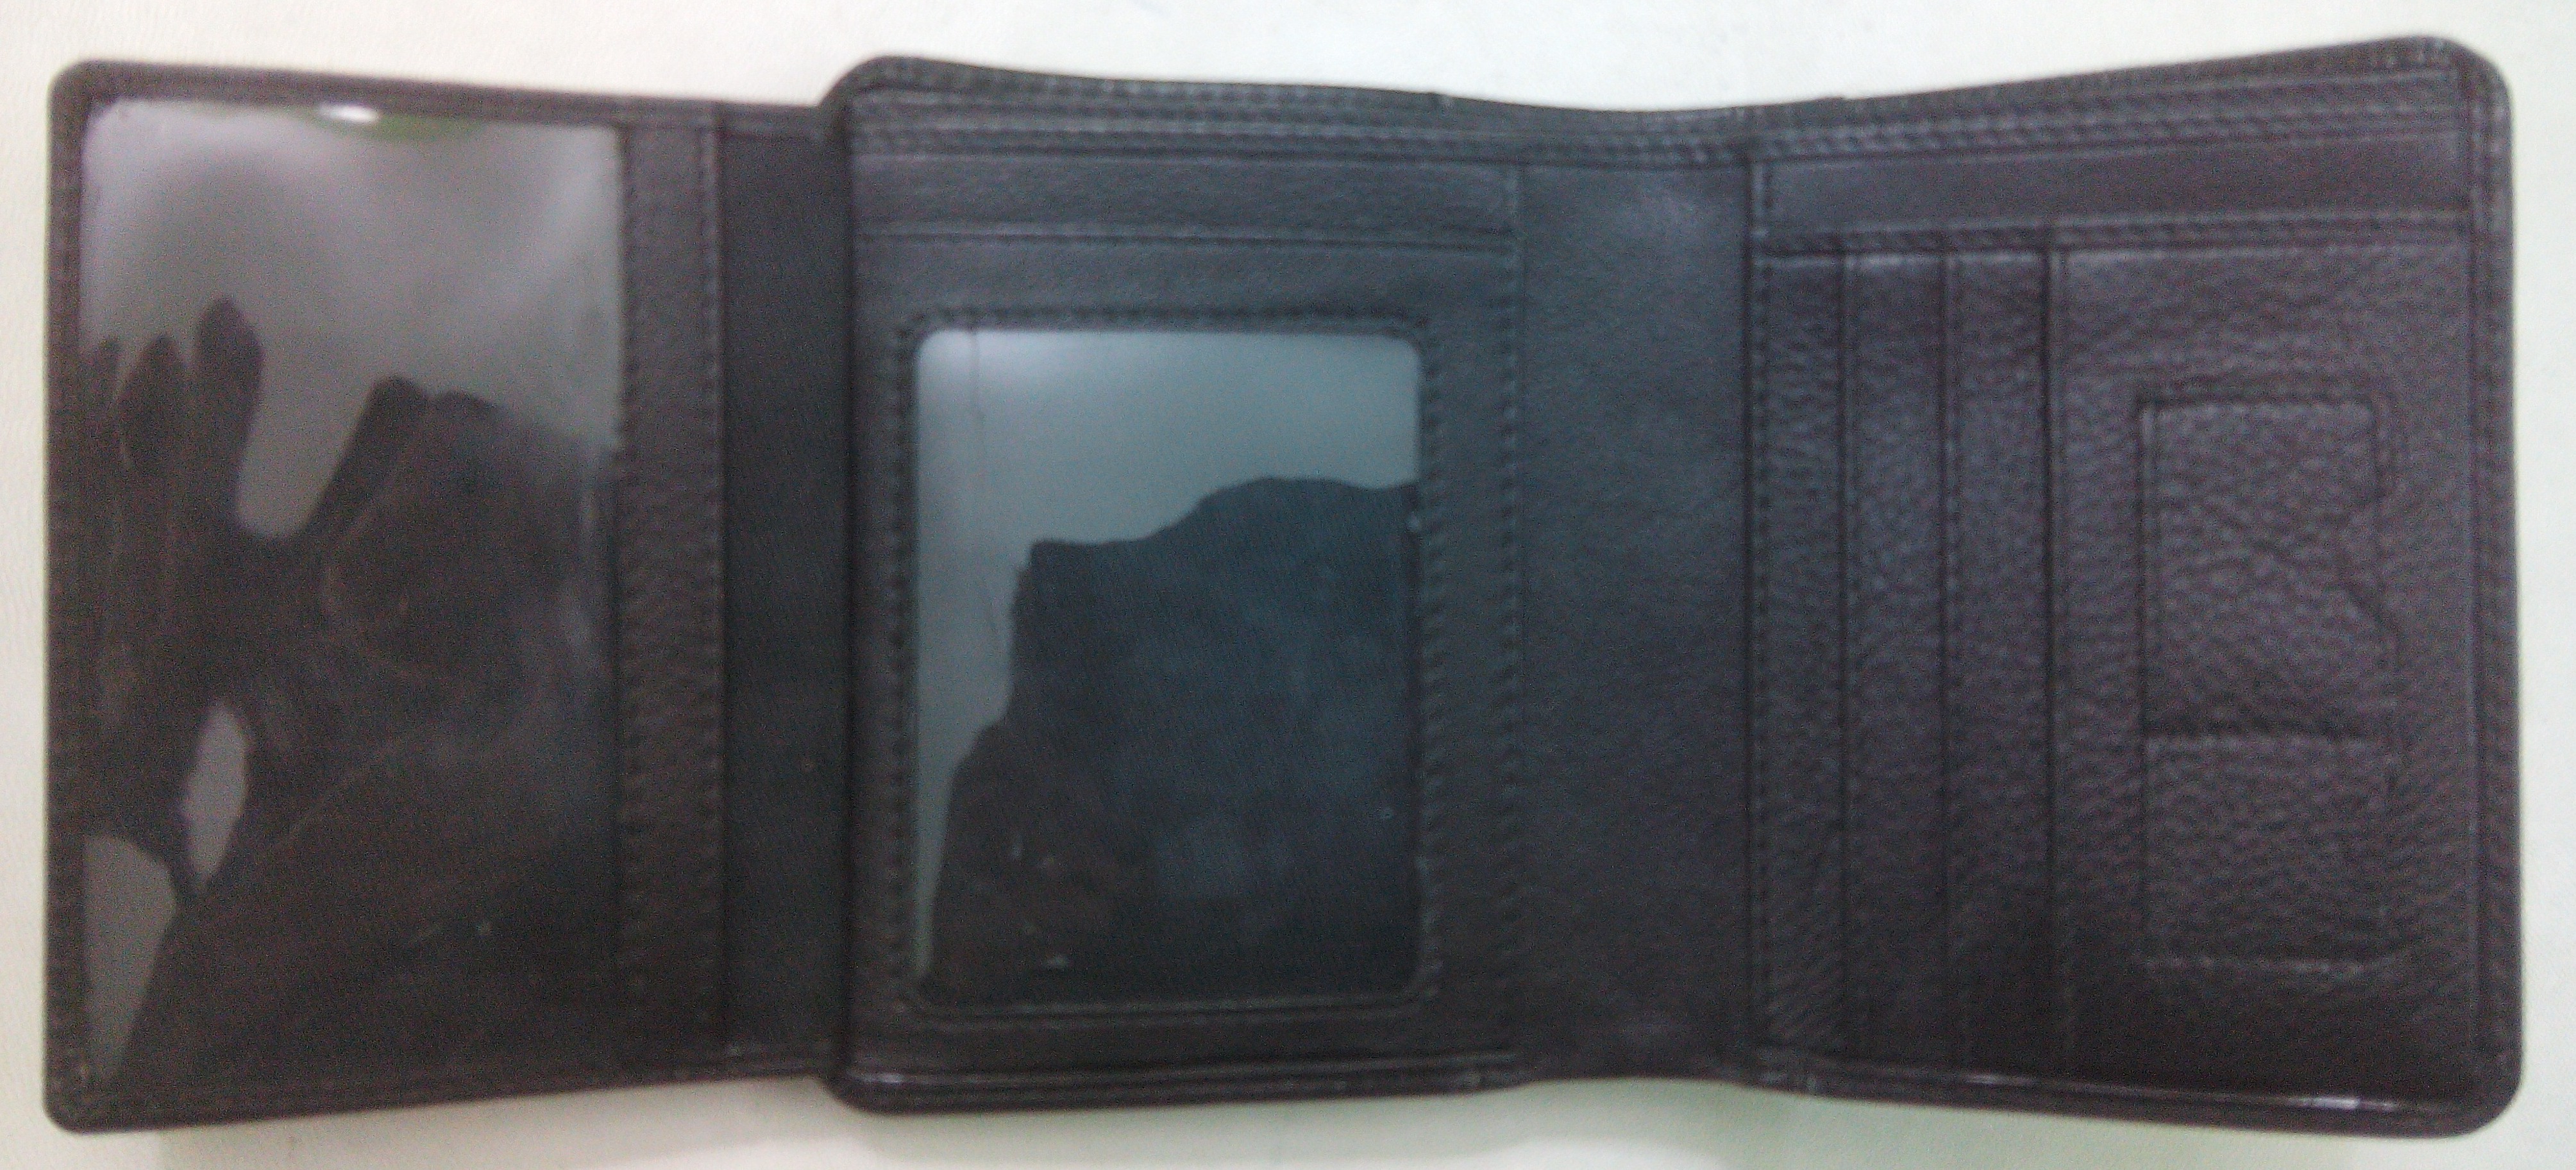 Notecase Wallet